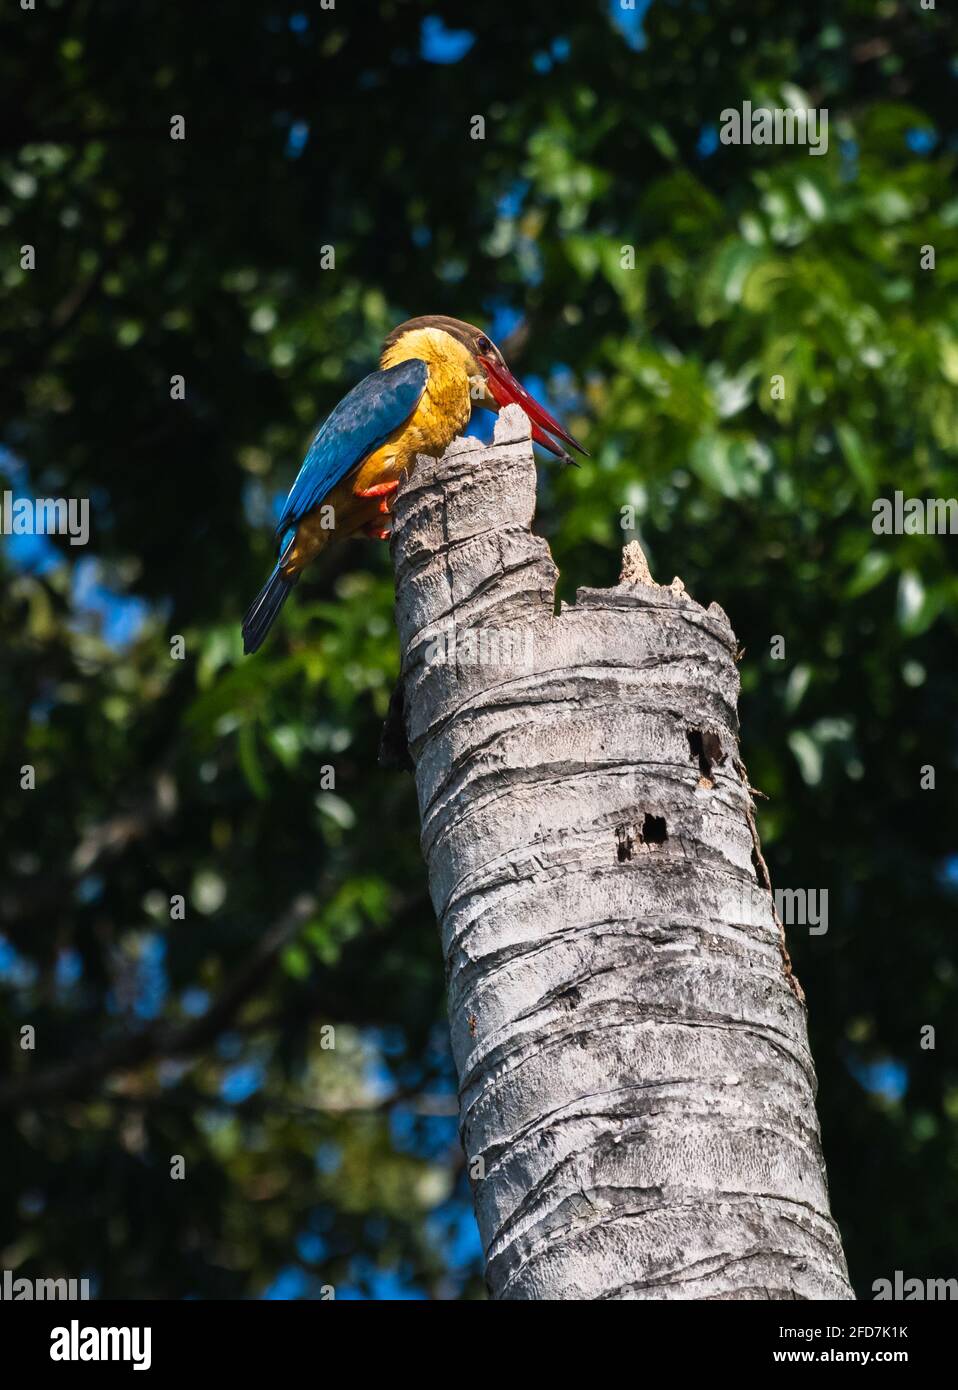 Storchschnabel-Eisvögel sitzt auf einem rostigen alten Kokosnussbaum-Stamm und zielt darauf ab, dass das Spechtvögel-Nest im Stamm liegt, der Jungvögel hat Stockfoto